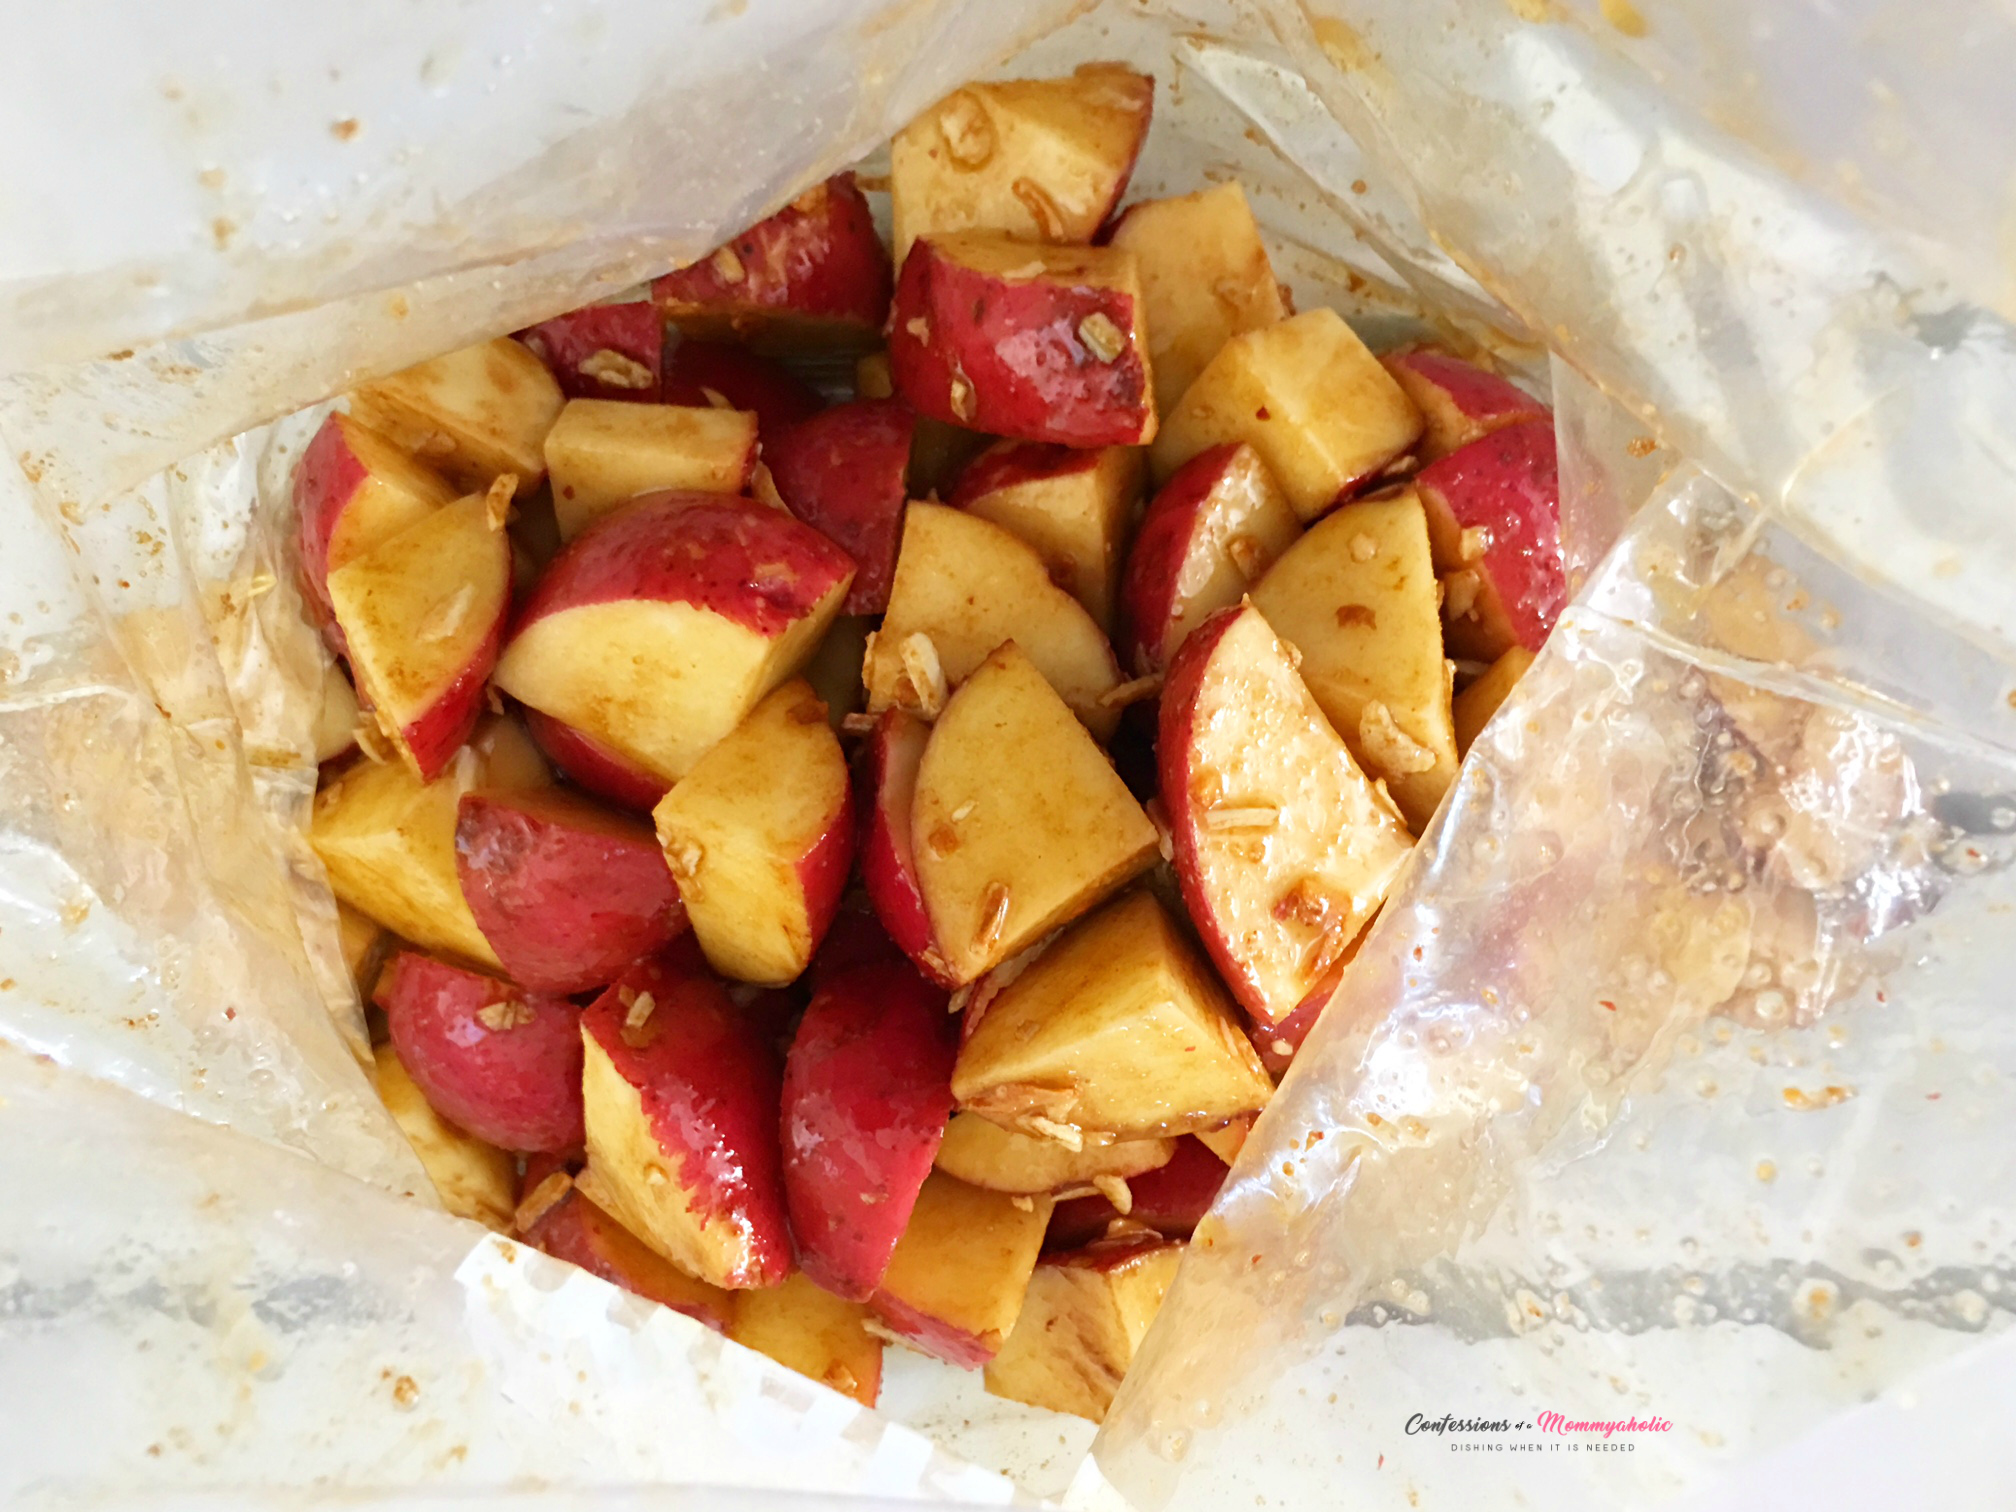 Oven Roasted Potatoes in Ziplock Bag 3